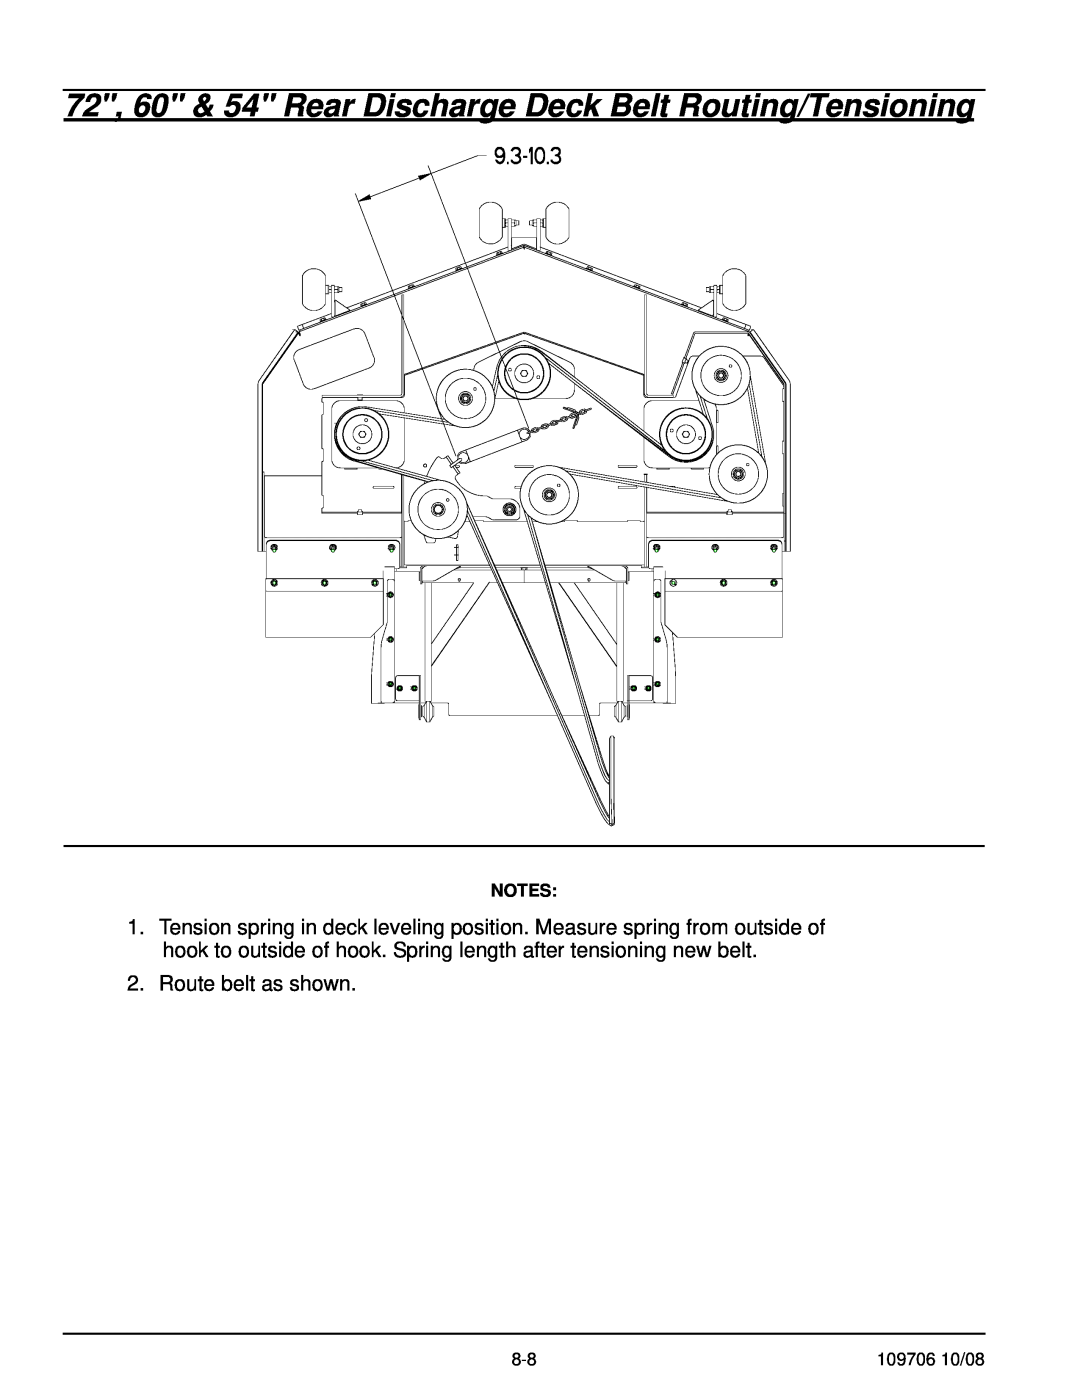 Hustler Turf Diesel Z manual 72, 60 & 54 Rear Discharge Deck Belt Routing/Tensioning, Route belt as shown 